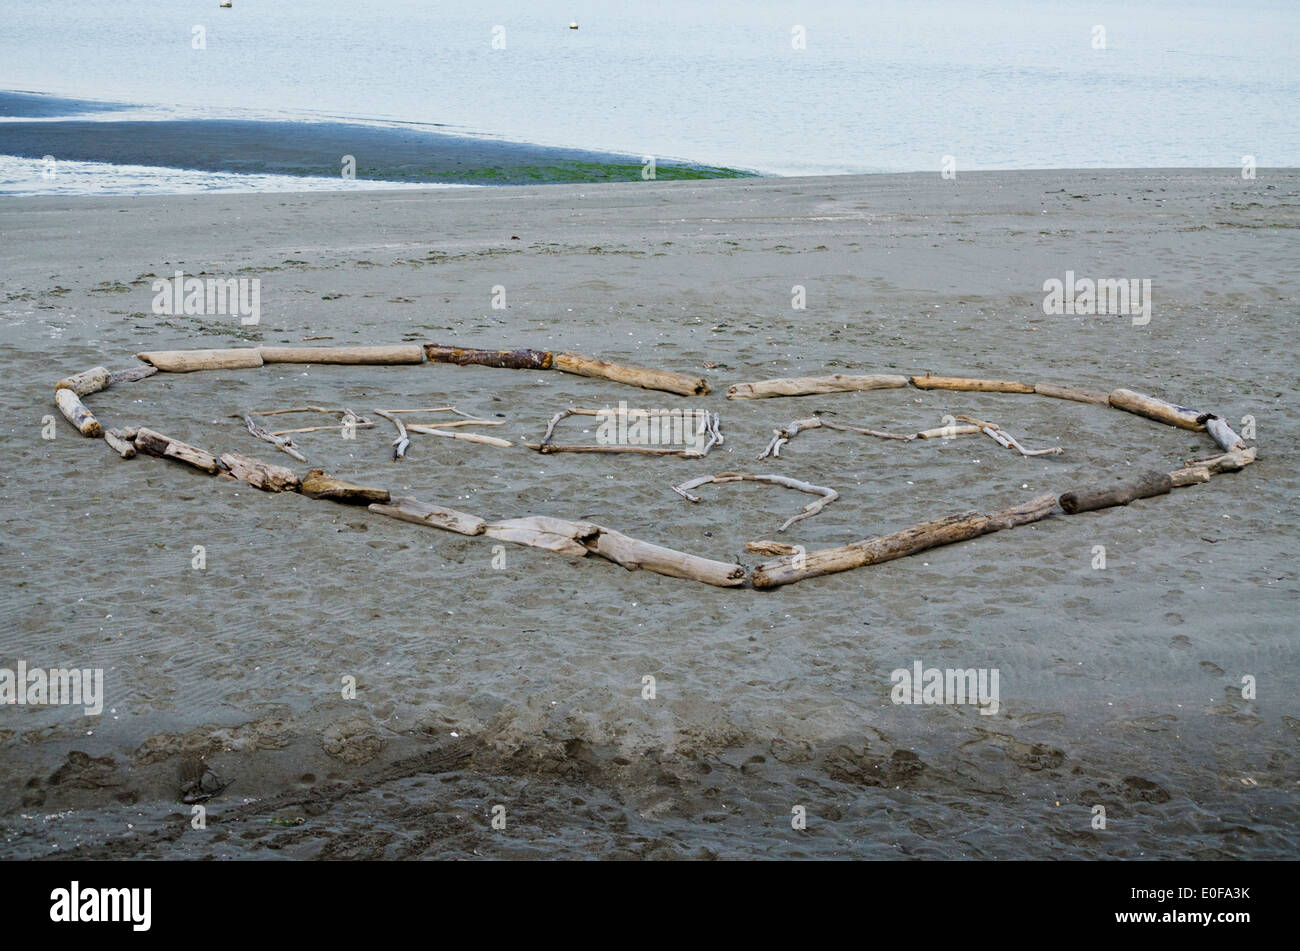 Romantico cuore prom proposta fatta con driftwood. Avvistato sulla spiaggia sulla Whidbey Island, nello Stato di Washington, U.S.A. Maggio 2014. Foto Stock